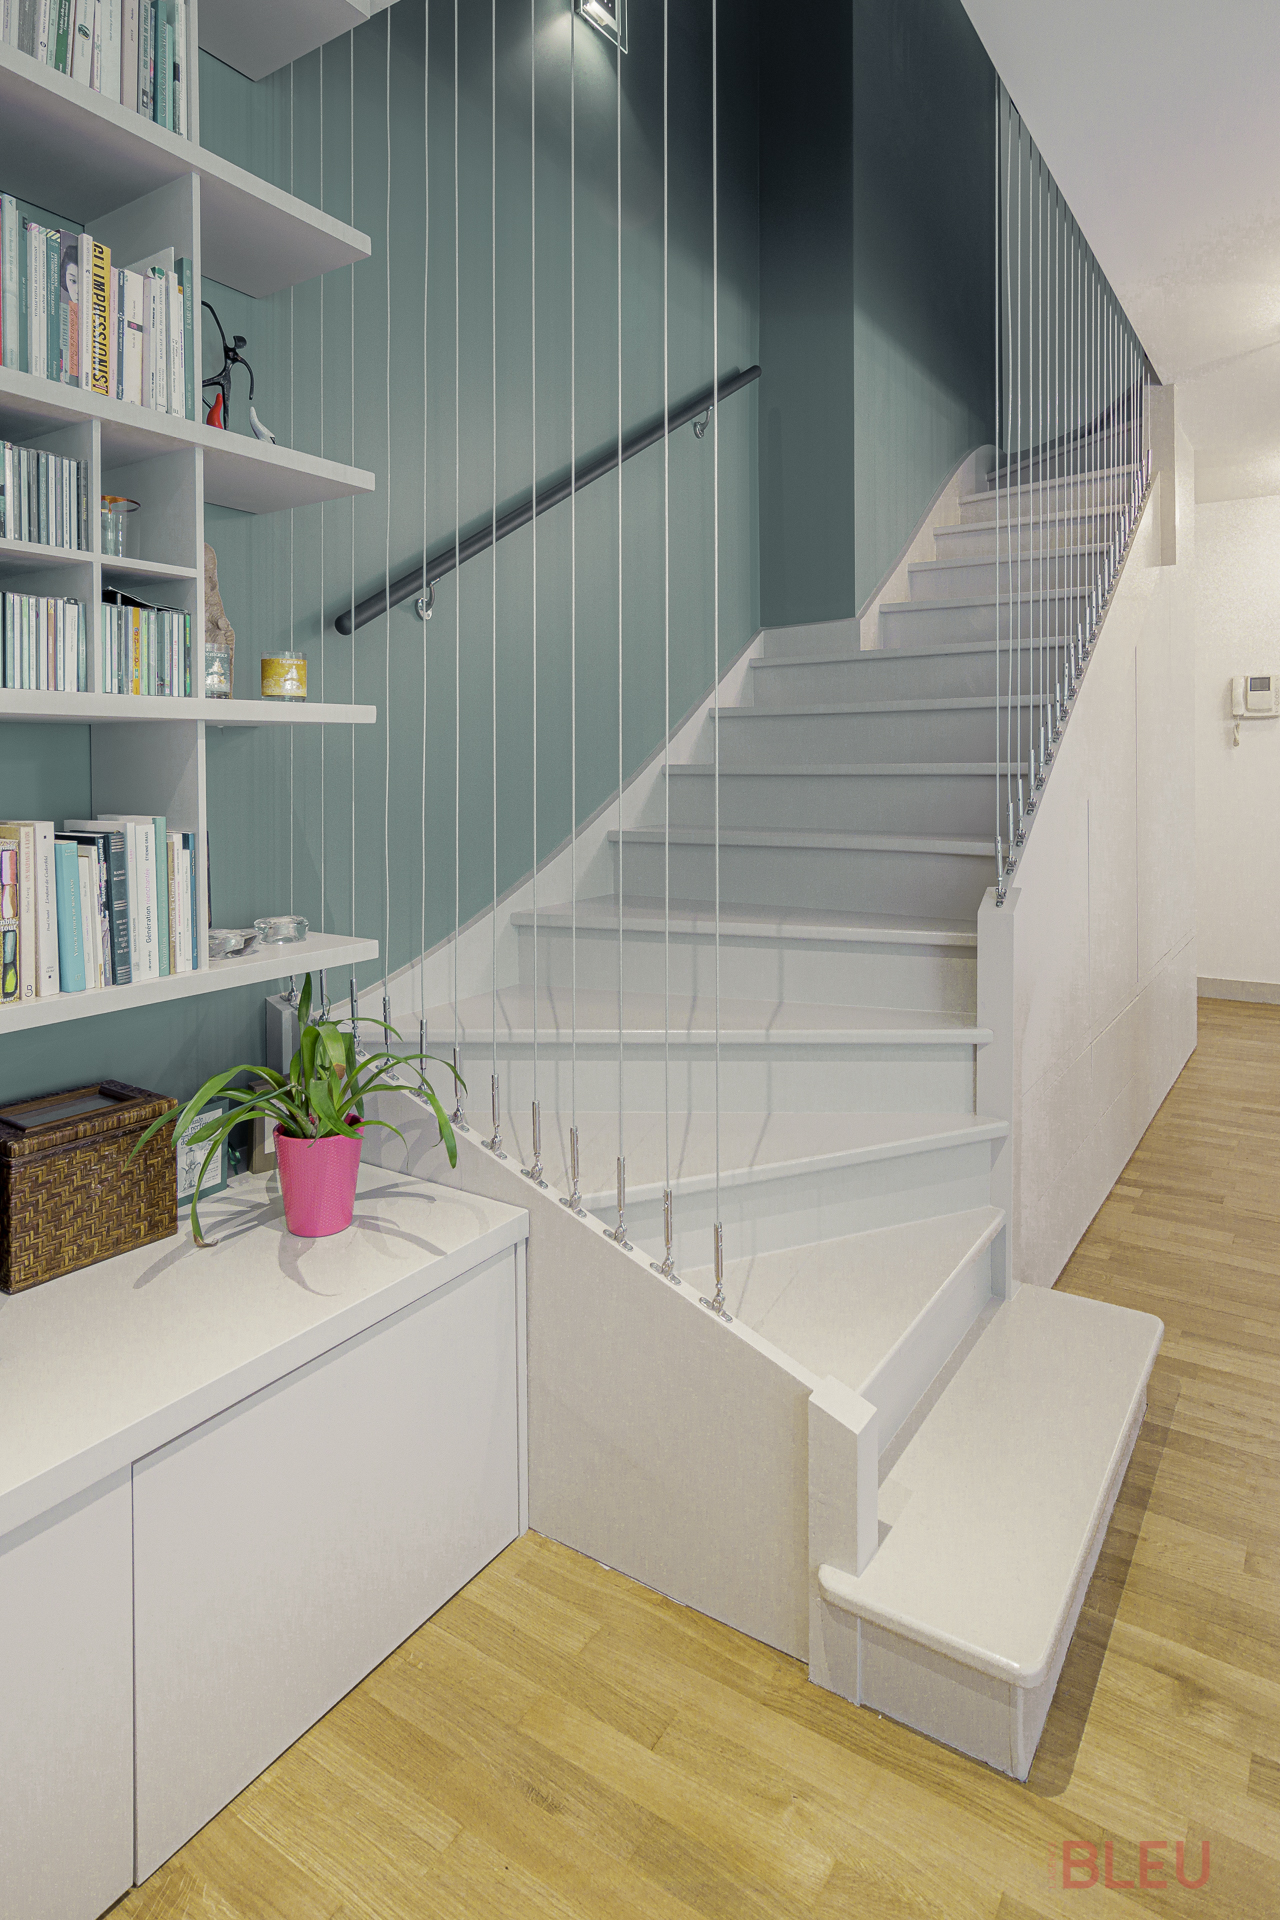 L'escalier d'origine est lourd et sombre, ne correspondant pas aux goûts des résidents. Les garde-corps sont supprimés, le bois est décapé et poncé pour effacer les marques du temps. Des filins et une main courante sont ajoutés pour améliorer l'accessibilité. Une peinture époxy noire unifie l'escalier avec le dressing de l'entrée. Le résultat est fonctionnel, léger et moderne malgré l'utilisation de l'ancien escalier.